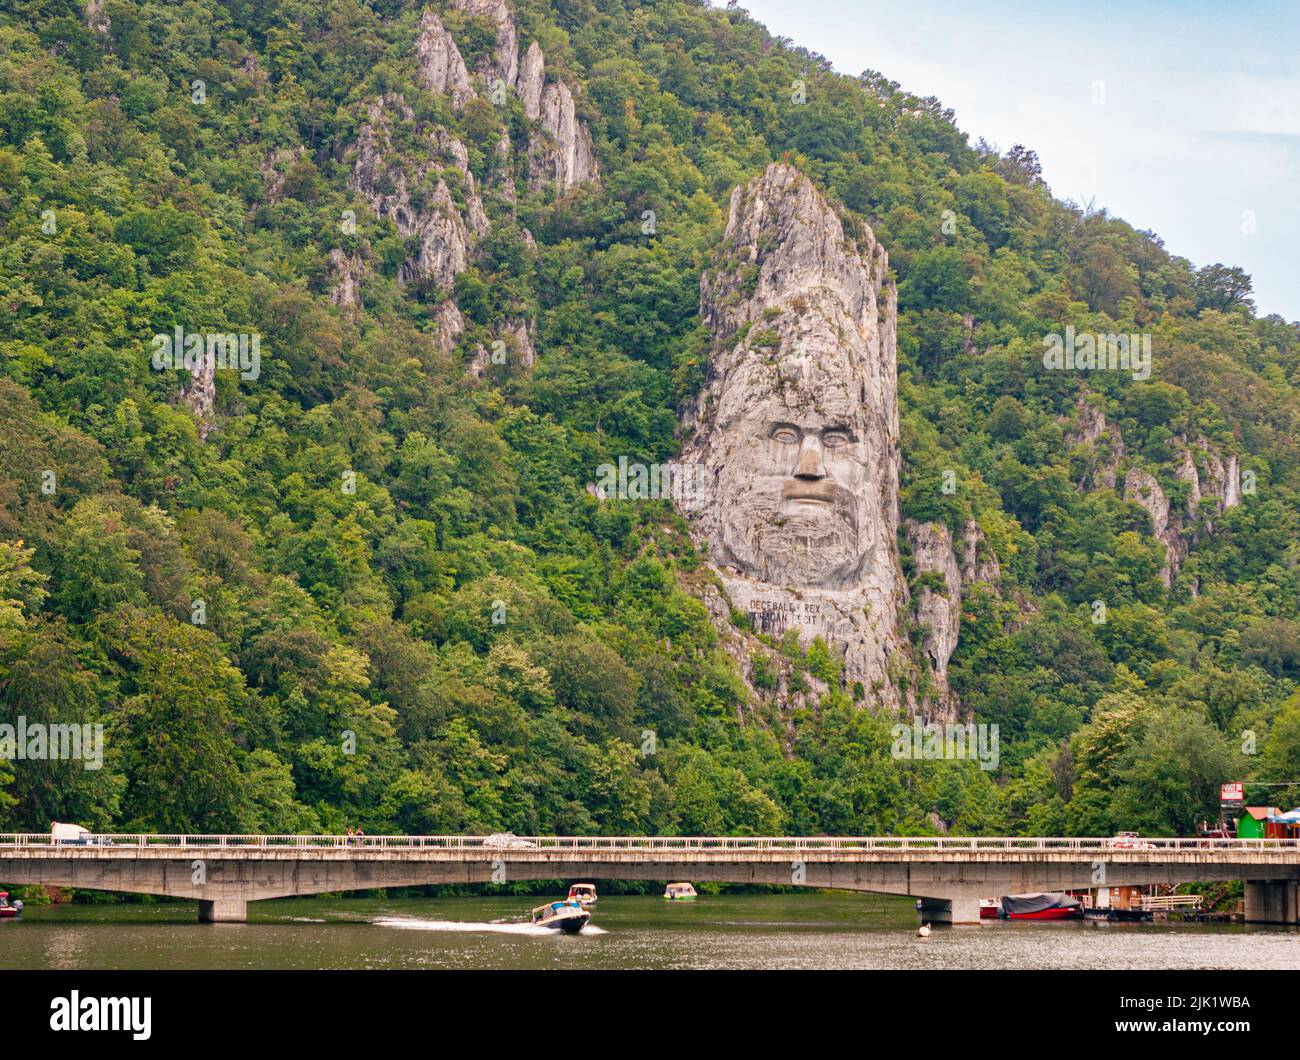 En naviguant à travers les portes de fer du Danube, vous verrez peut-être une sculpture du visage d'un homme. C'est l'ancien roi Dacien, Decebalus de Roumanie. Banque D'Images